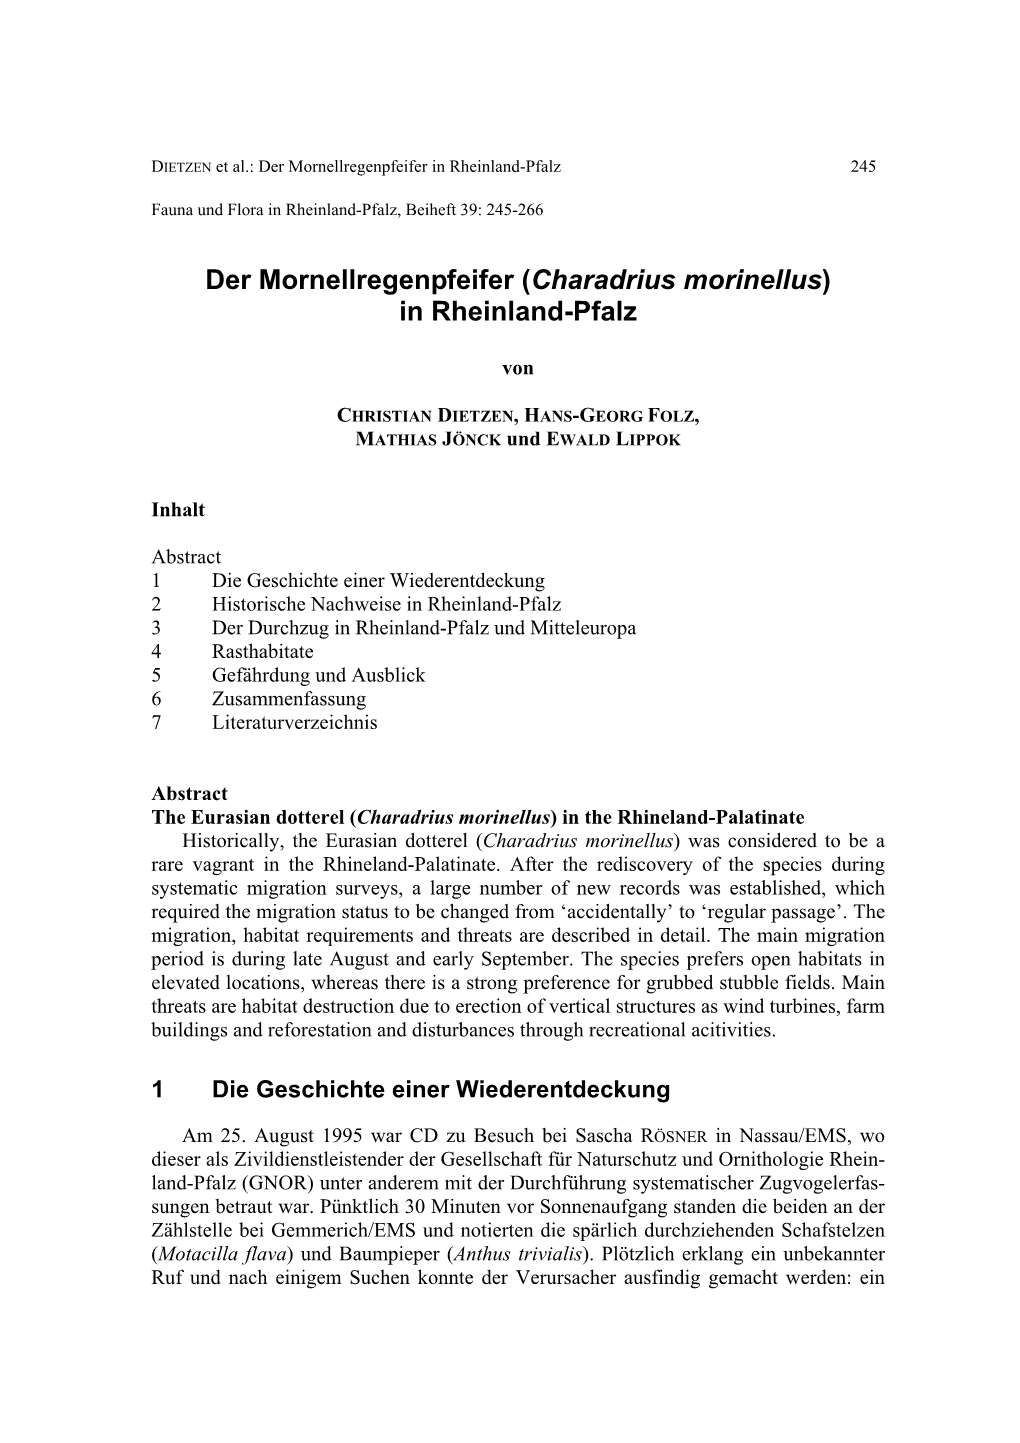 Der Mornellregenpfeifer (Charadrius Morinellus) in Rheinland-Pfalz